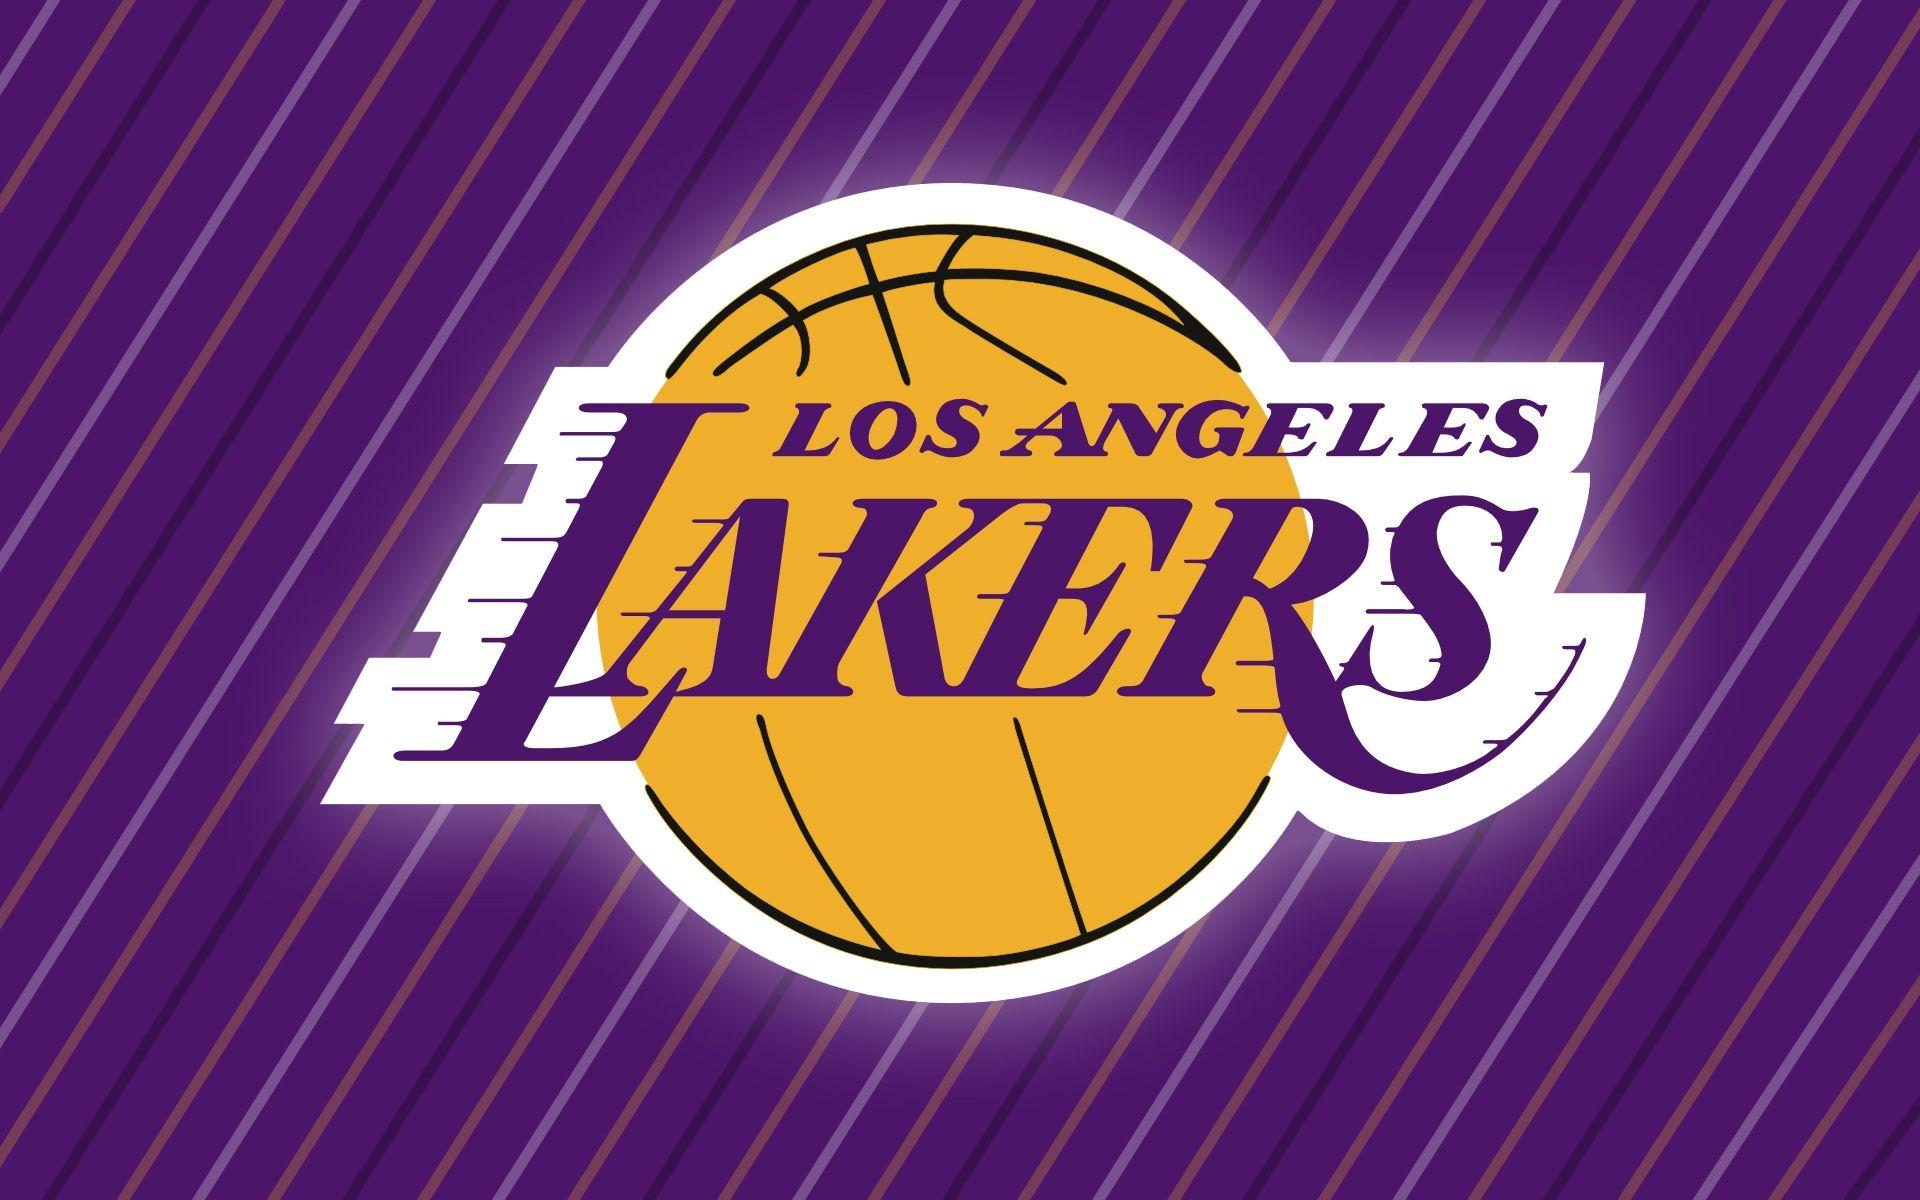 La Lakers Schedule HD Wallpaper In HD